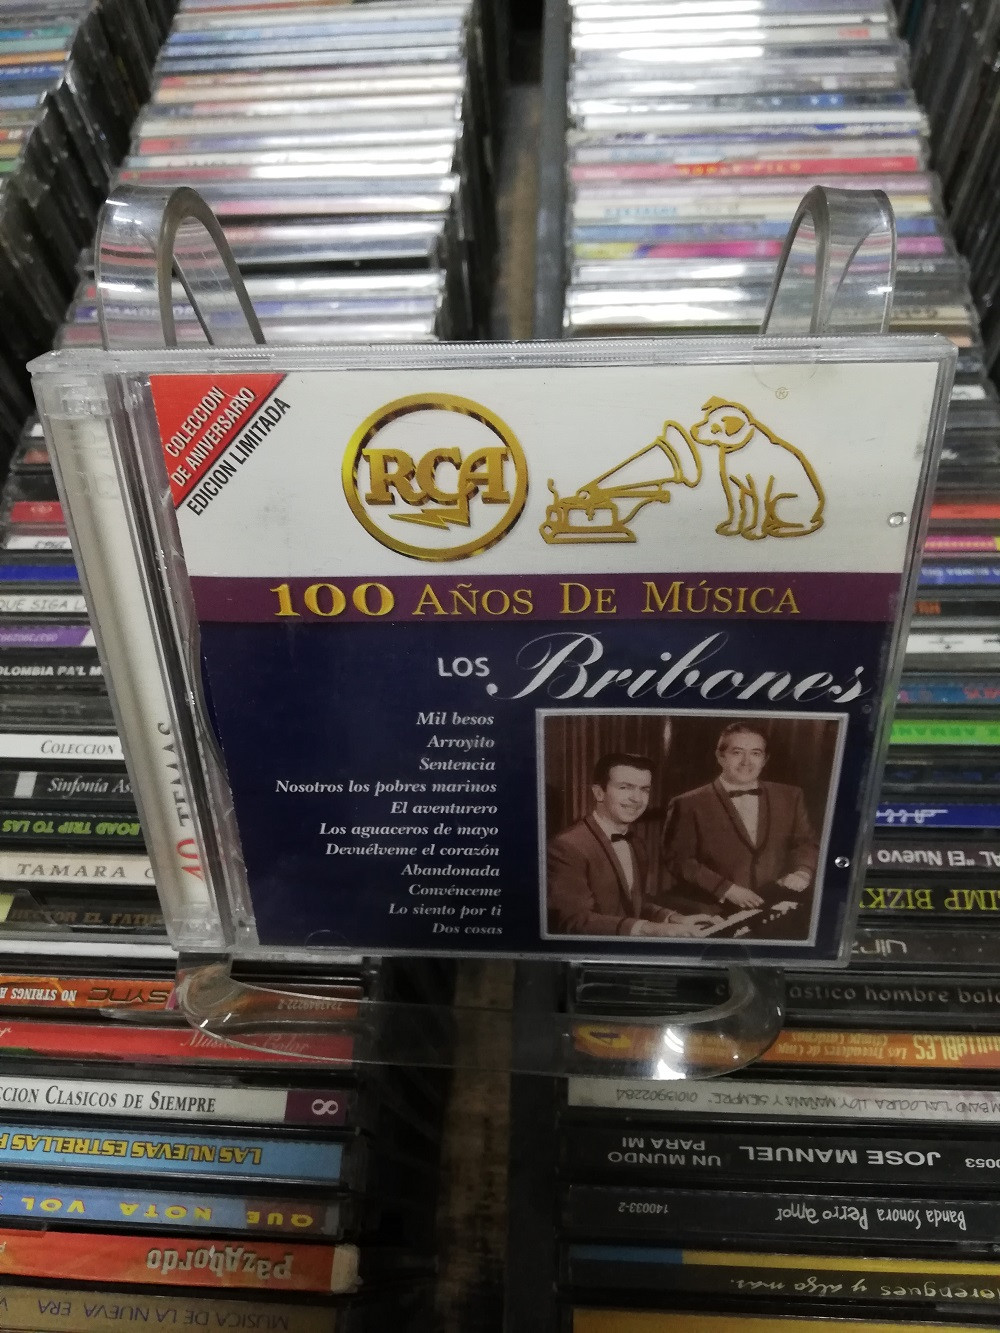 Imagen CD DOBLE LOS BRIBONES - 100 AÑOS DE MUSICA